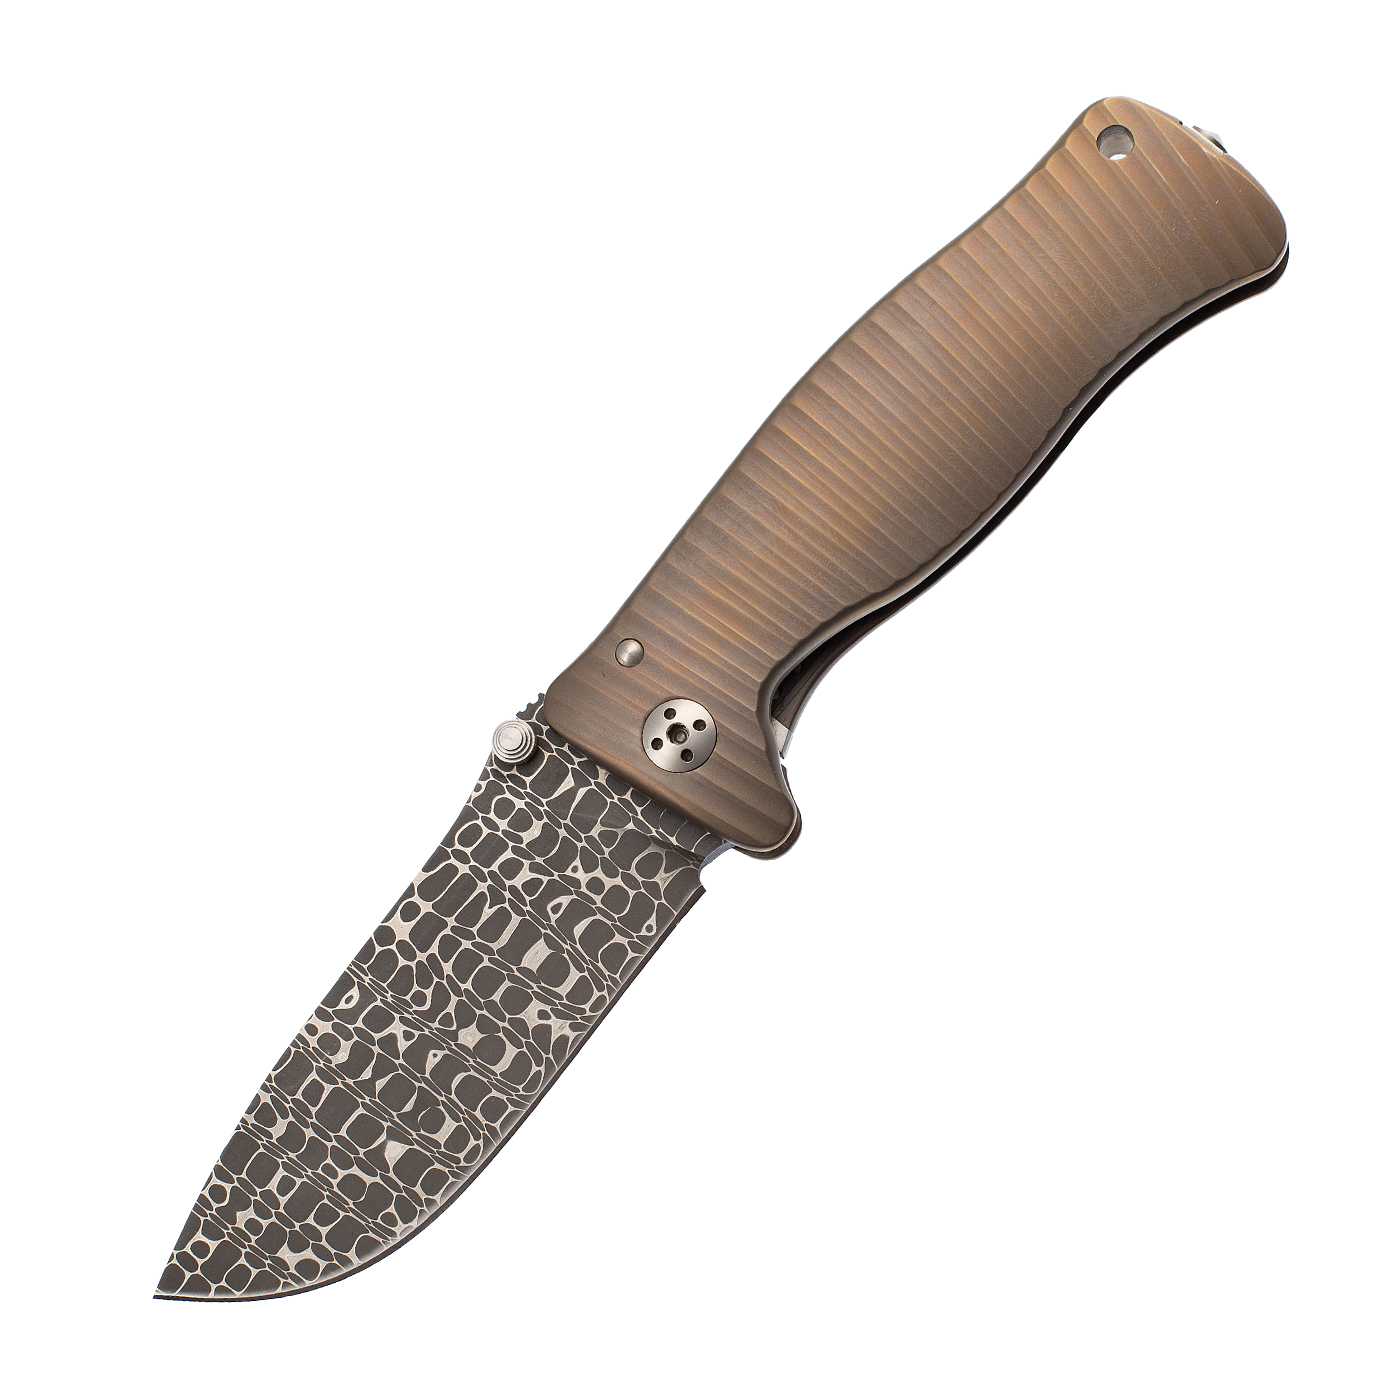 Нож складной LionSteel SR1DI G, сталь дамаск, рукоять титан складной нож hawk дамаск verawood